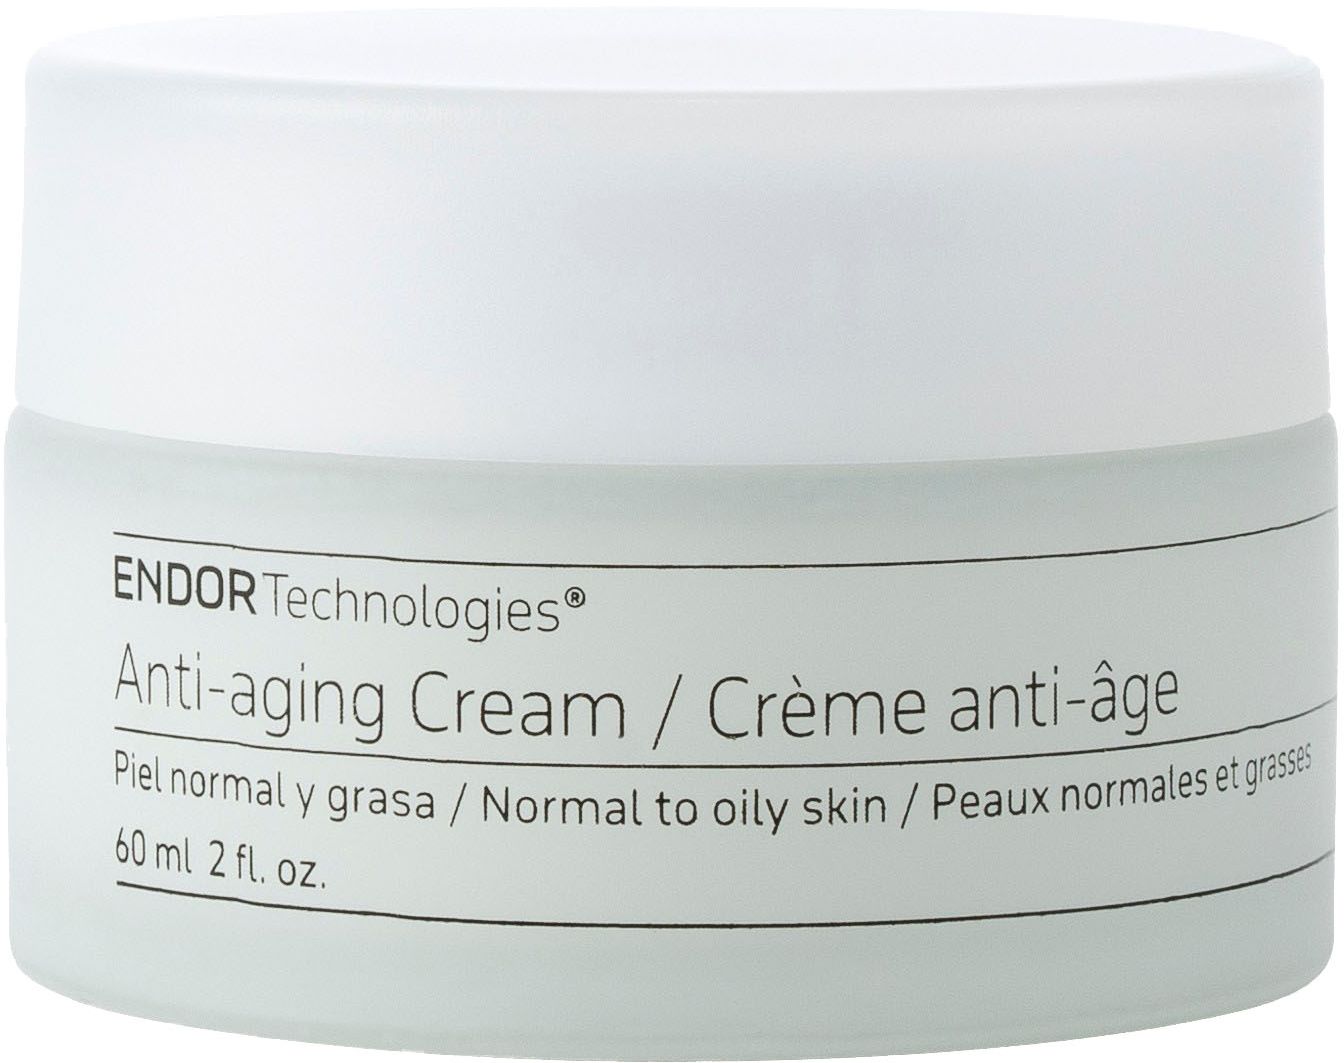 Endor Anti-aging Cream 60 ml